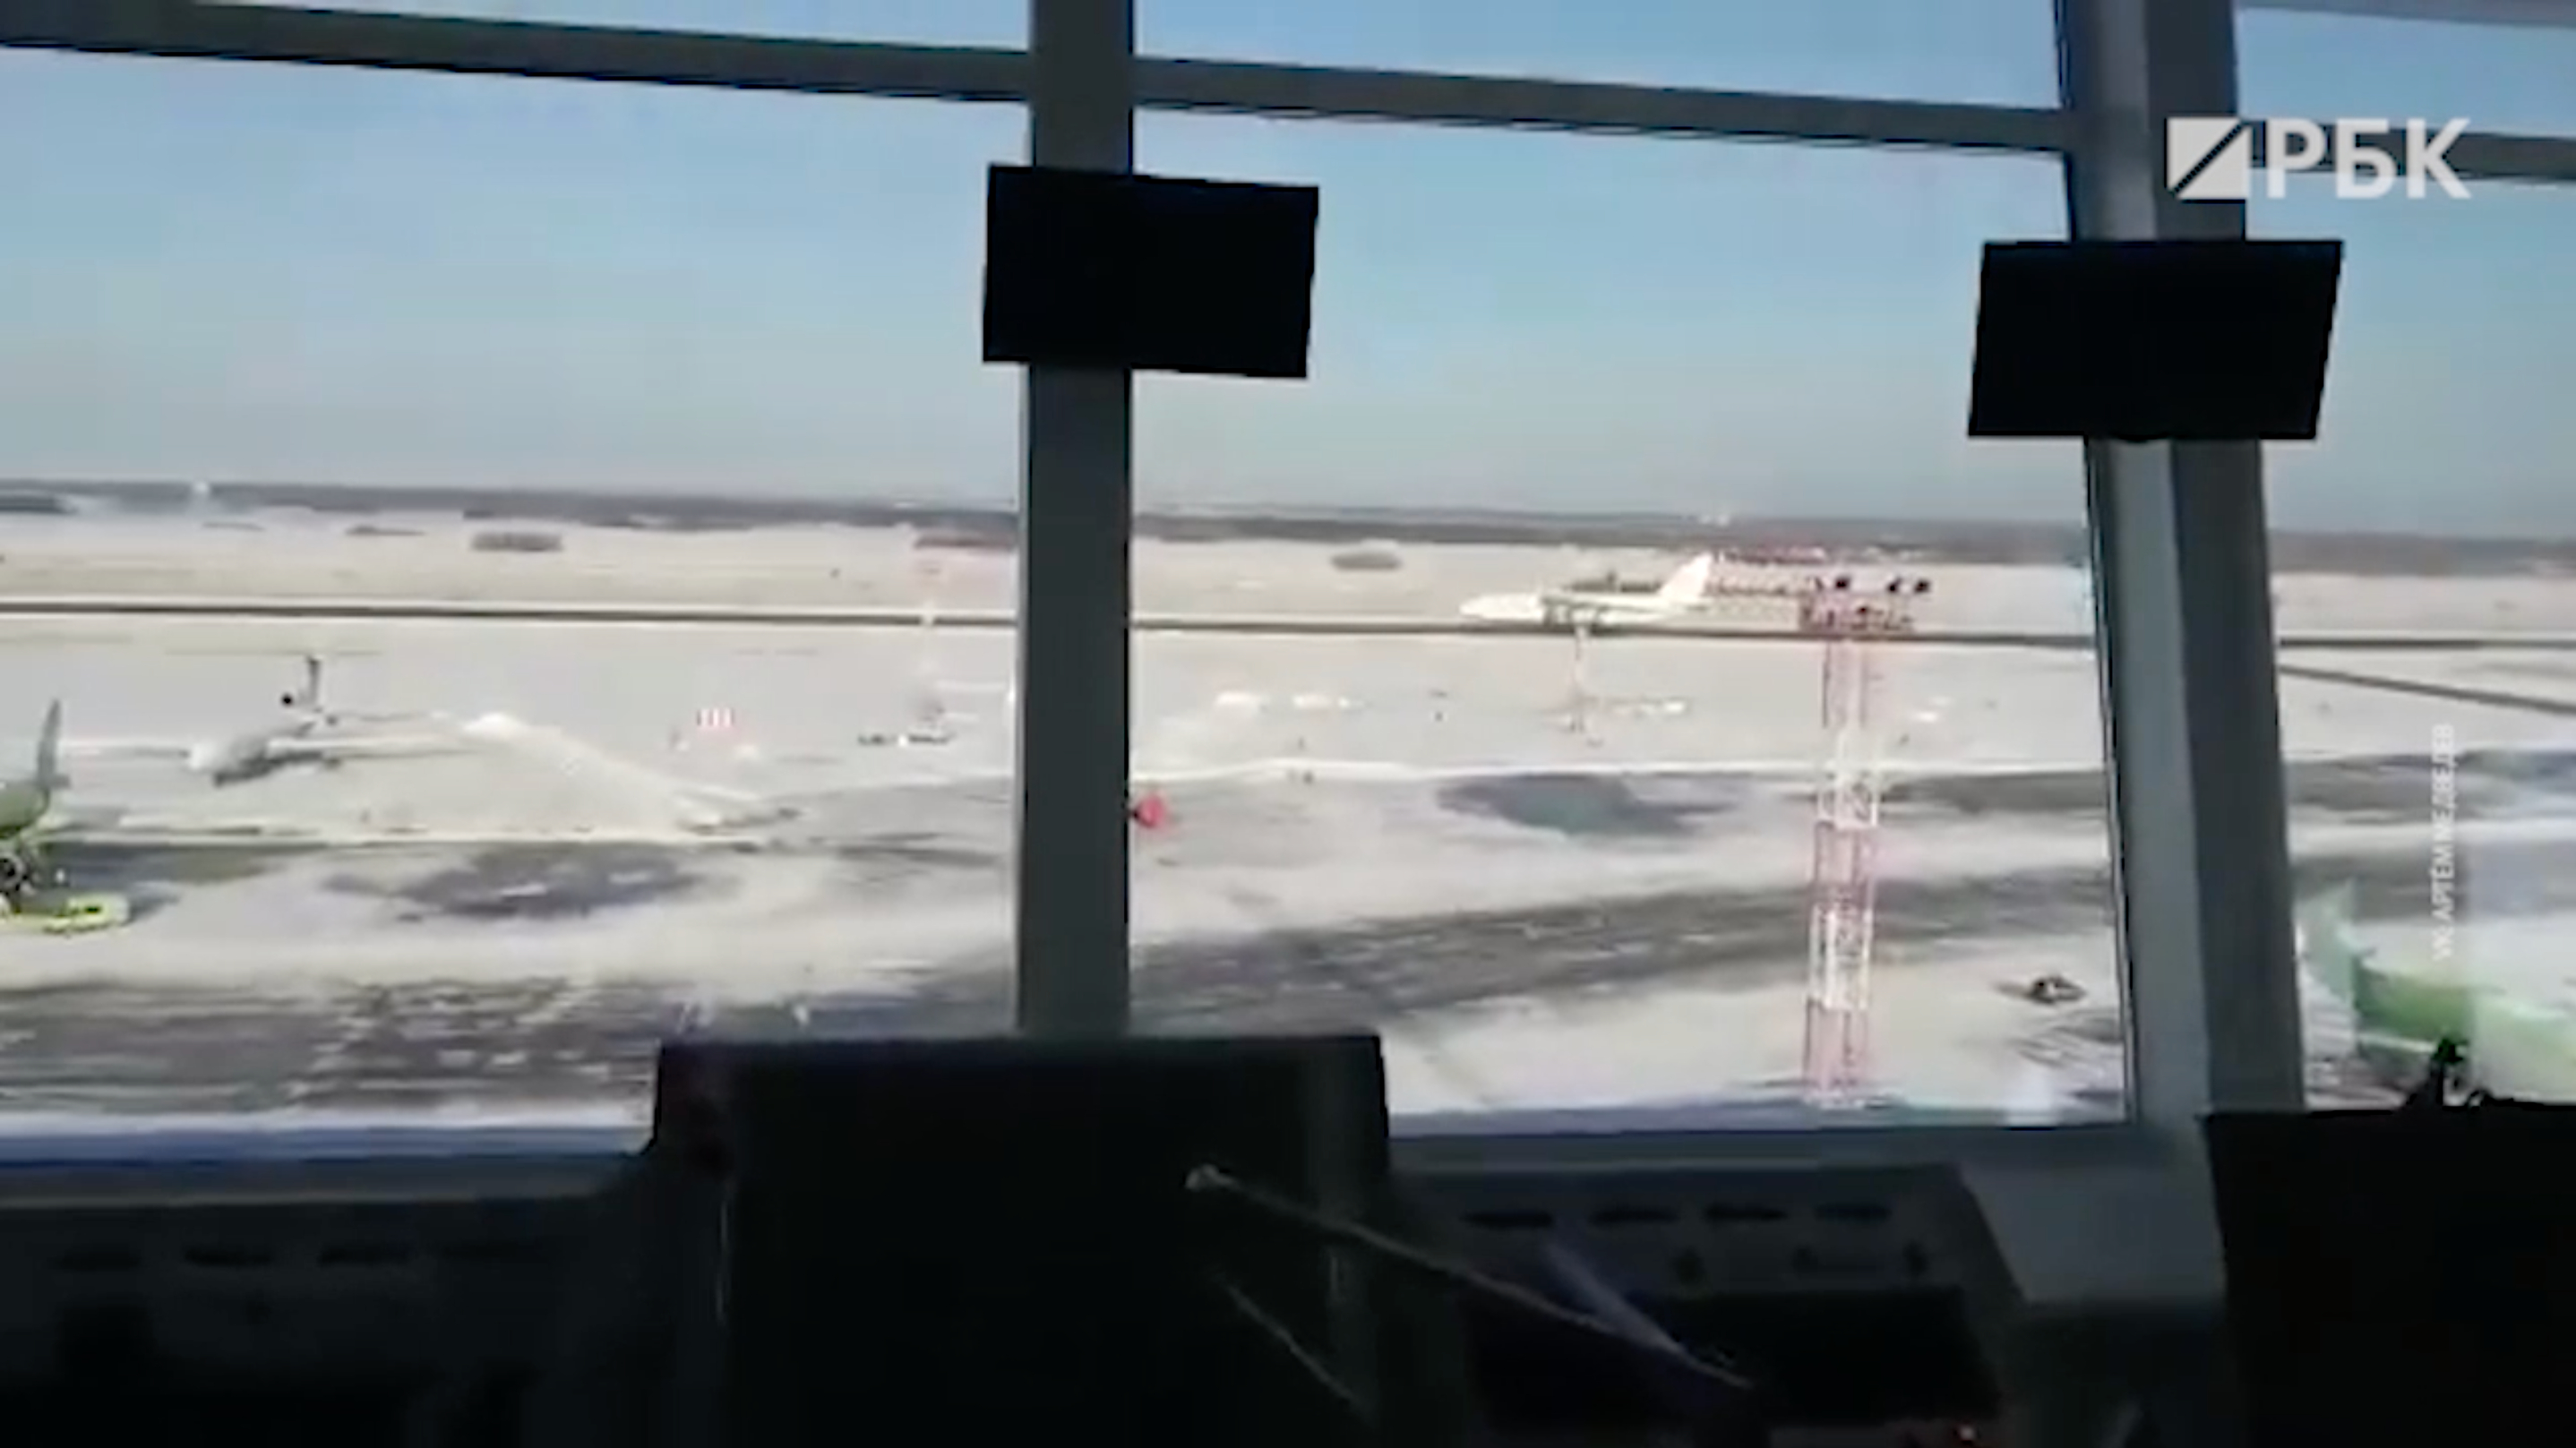 Аварийная посадка Ан-124 в Толмачево из диспетчерской аэропорта. Видео